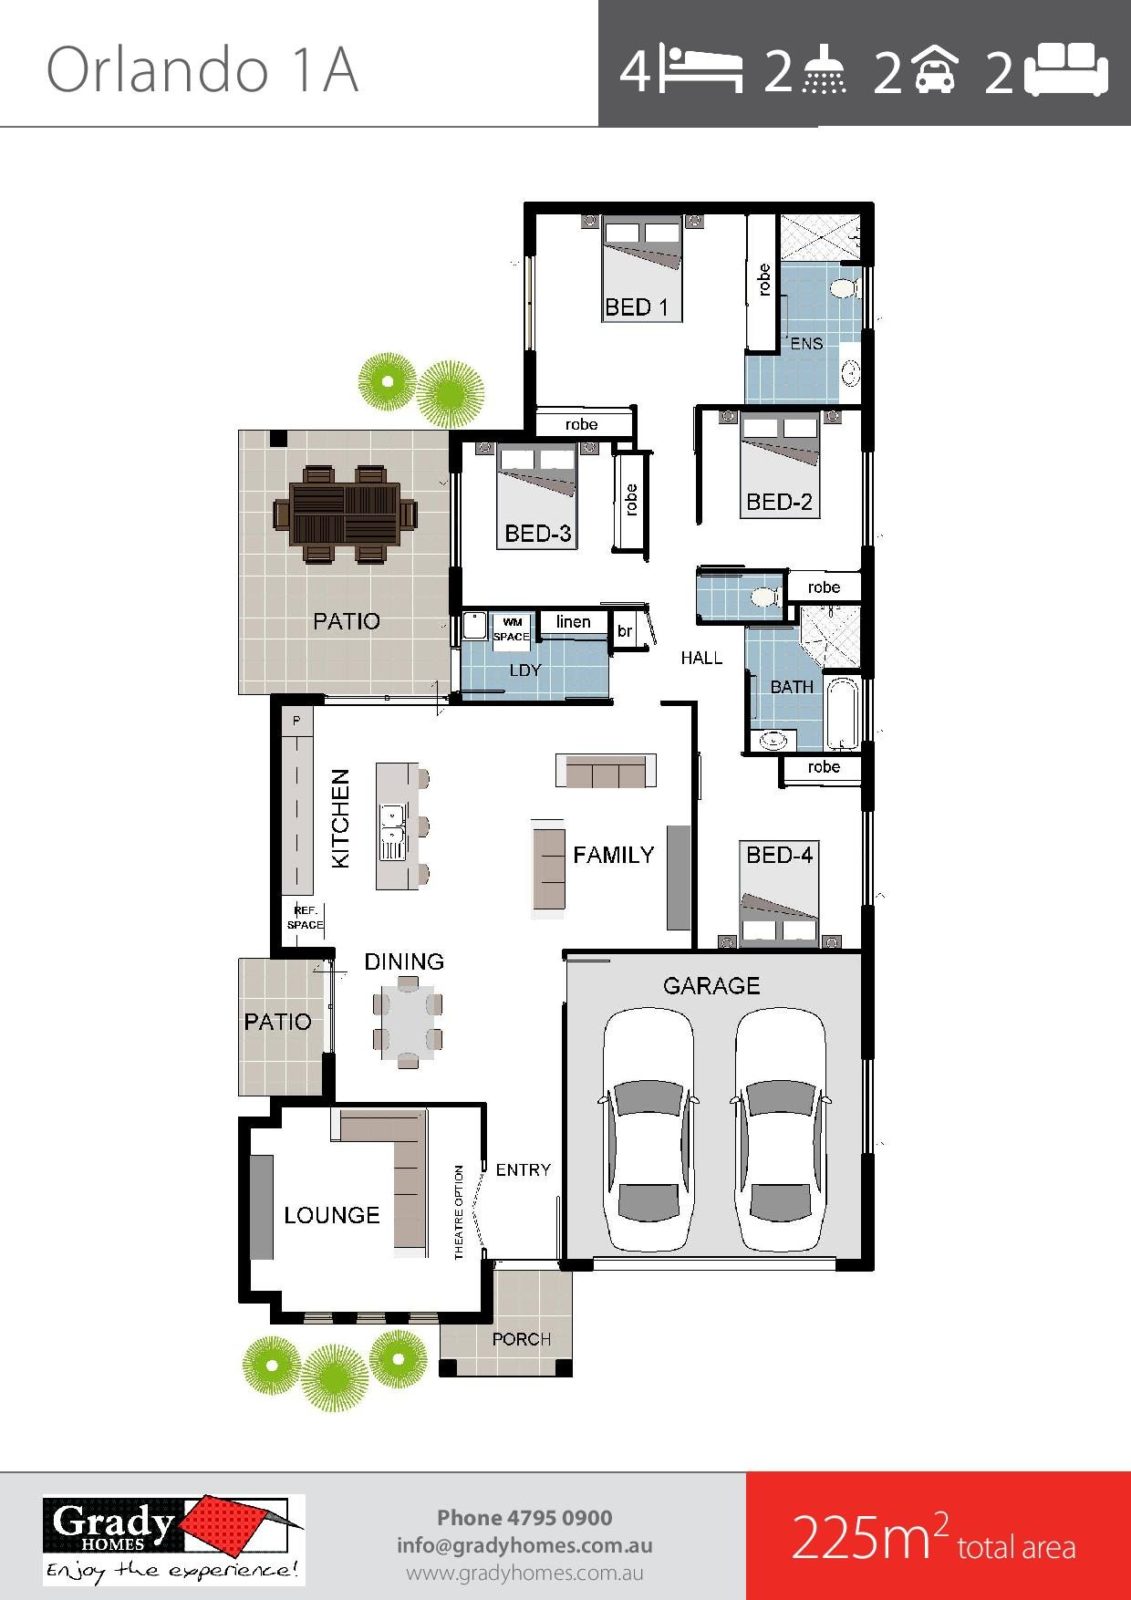 orlando-1a-grady-homes-floor-plan-brochure-2